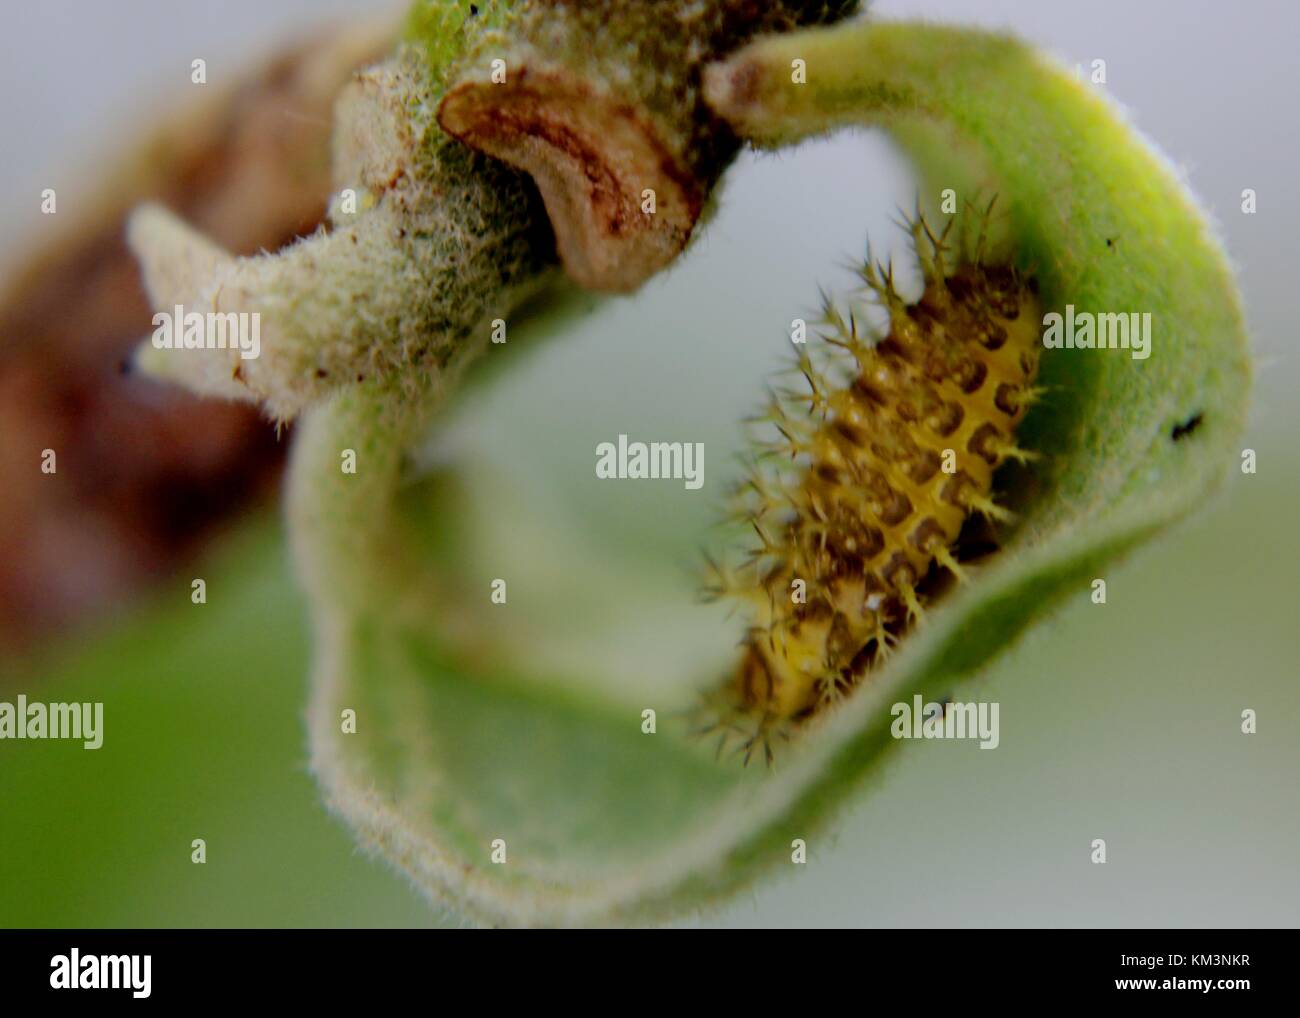 Nah-, Makro Blick auf eine kleine bunte Raupe - Insekt auf eine grüne Pflanze - Blatt - Stammzellen in einem Haus Garten in Sri Lanka Stockfoto